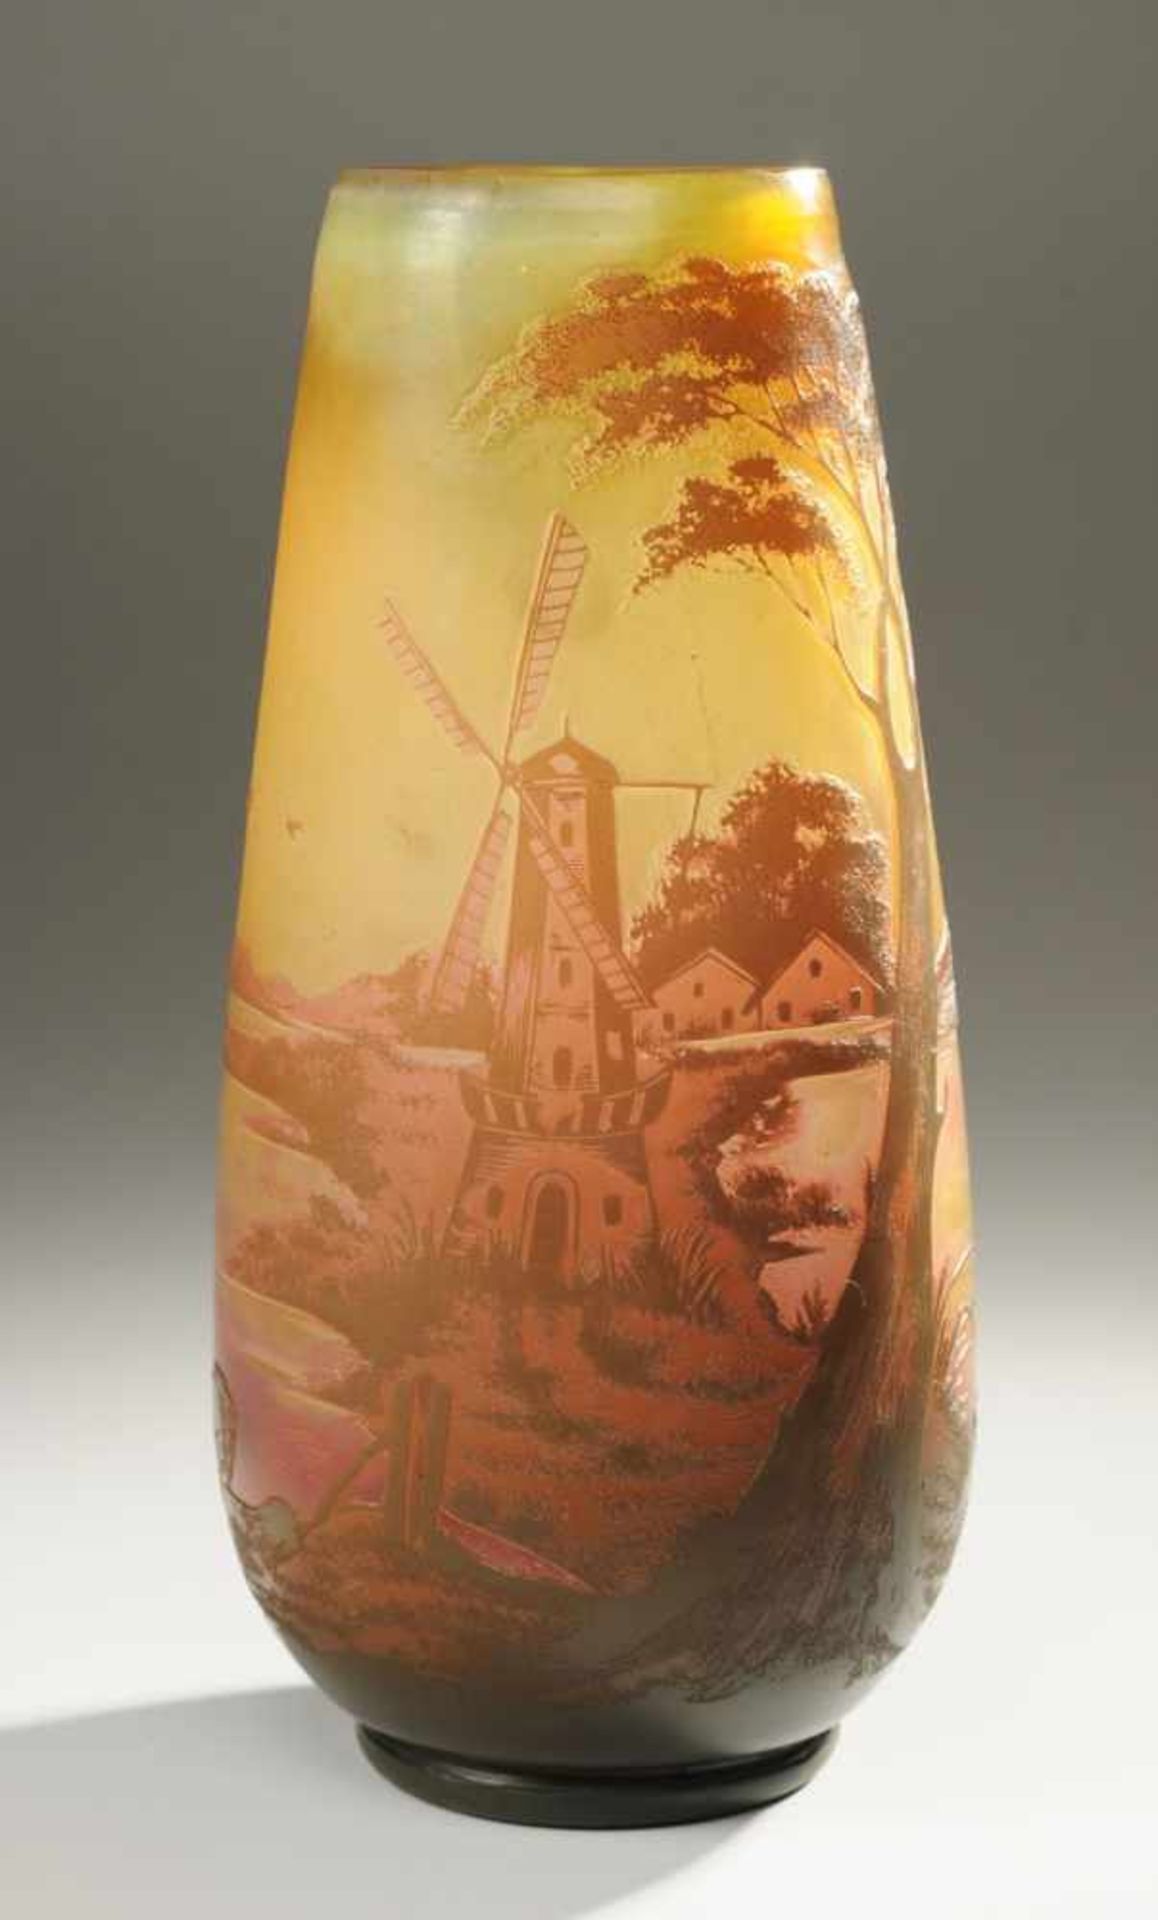 Arsall-Vase mit LandschaftFarbloses Glas, gelb, violett, braun u. grün überfangen, mattiert. Auf